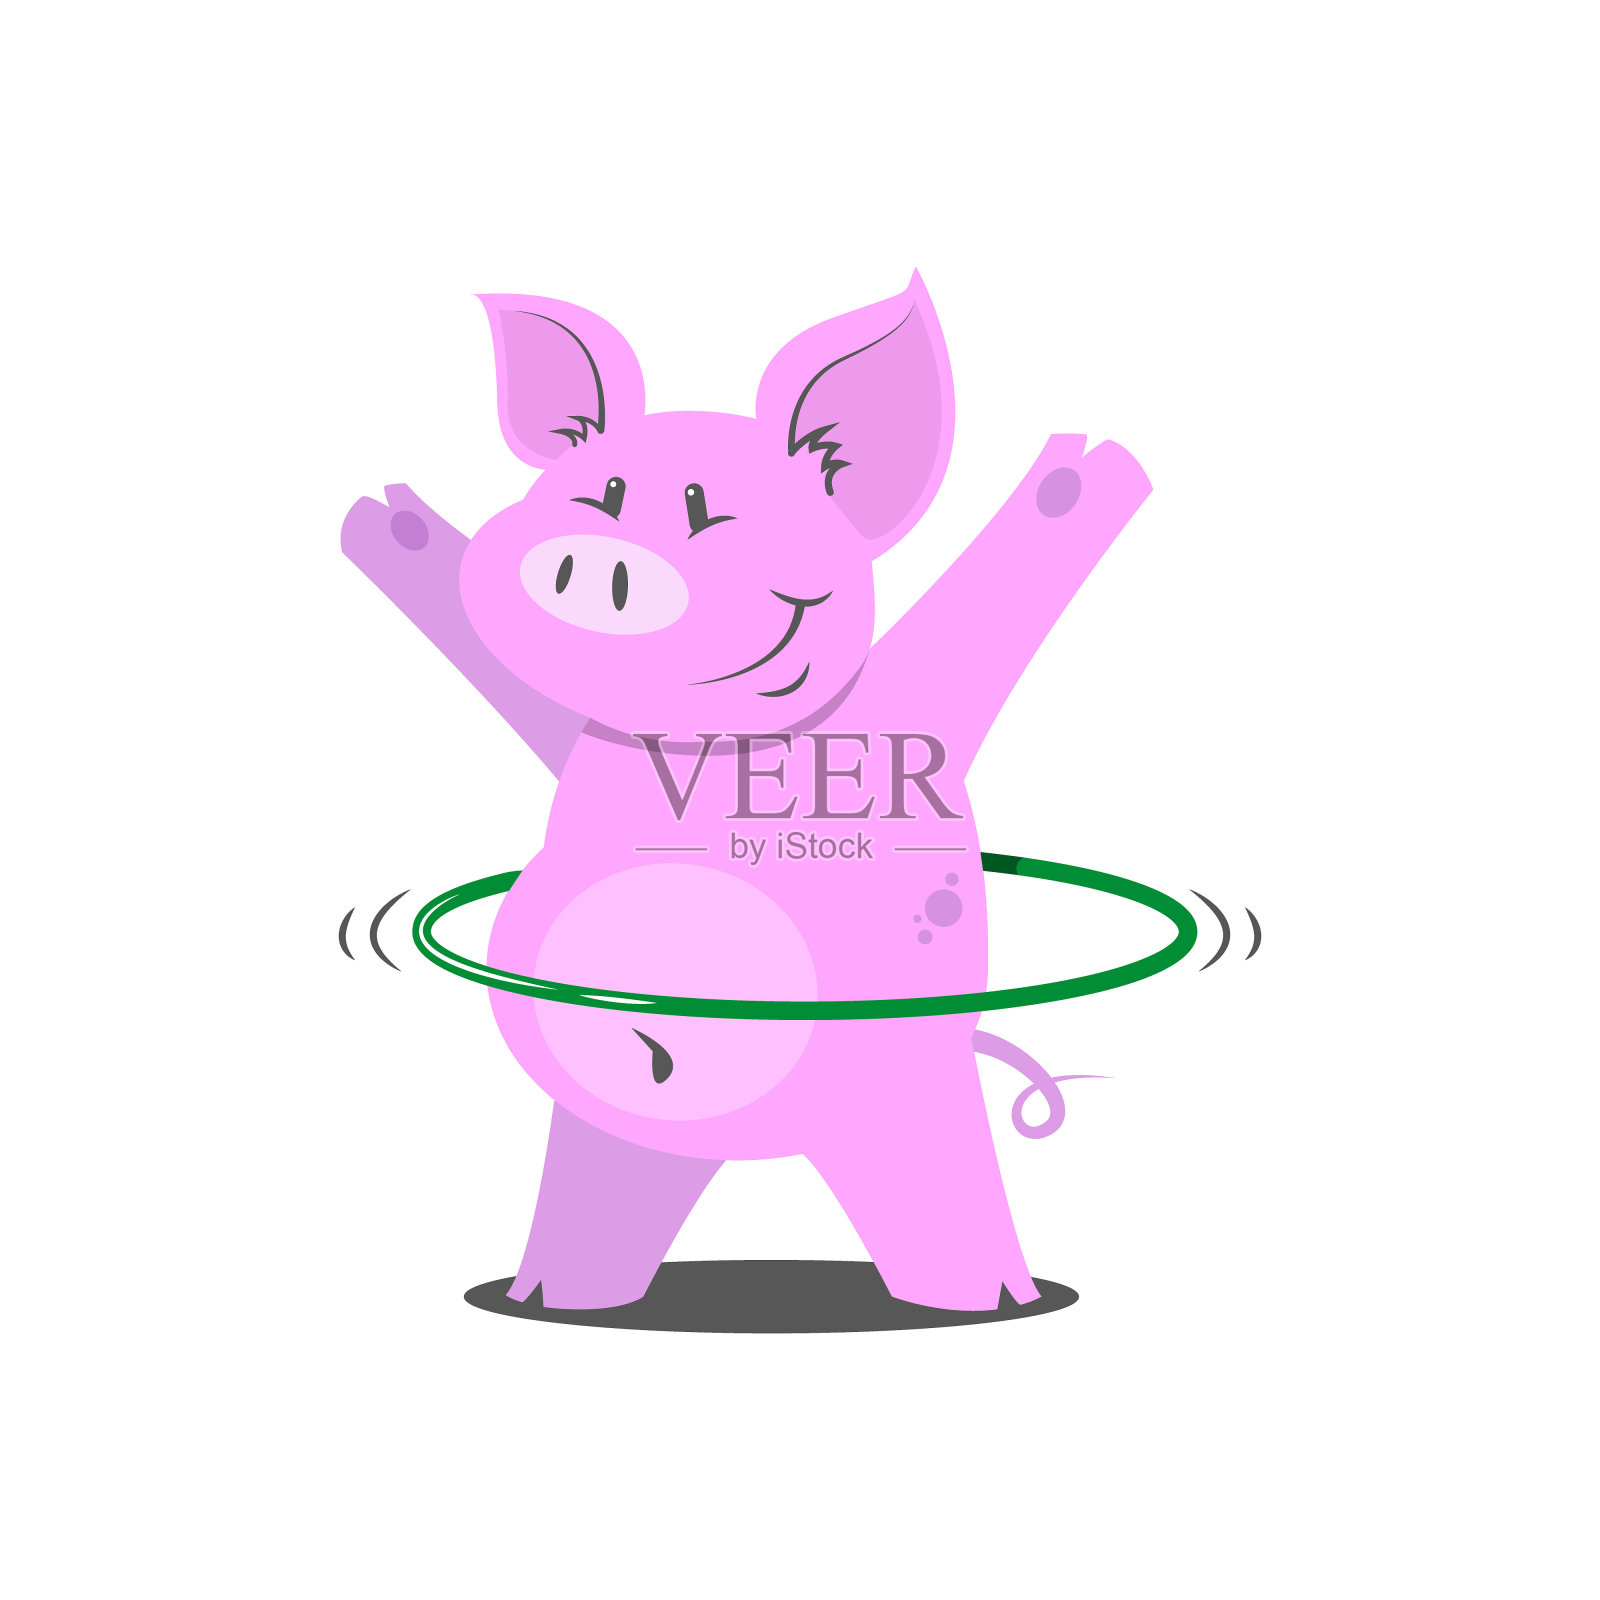 一个简单的胖猪和呼啦呼啦的插画设计元素图片